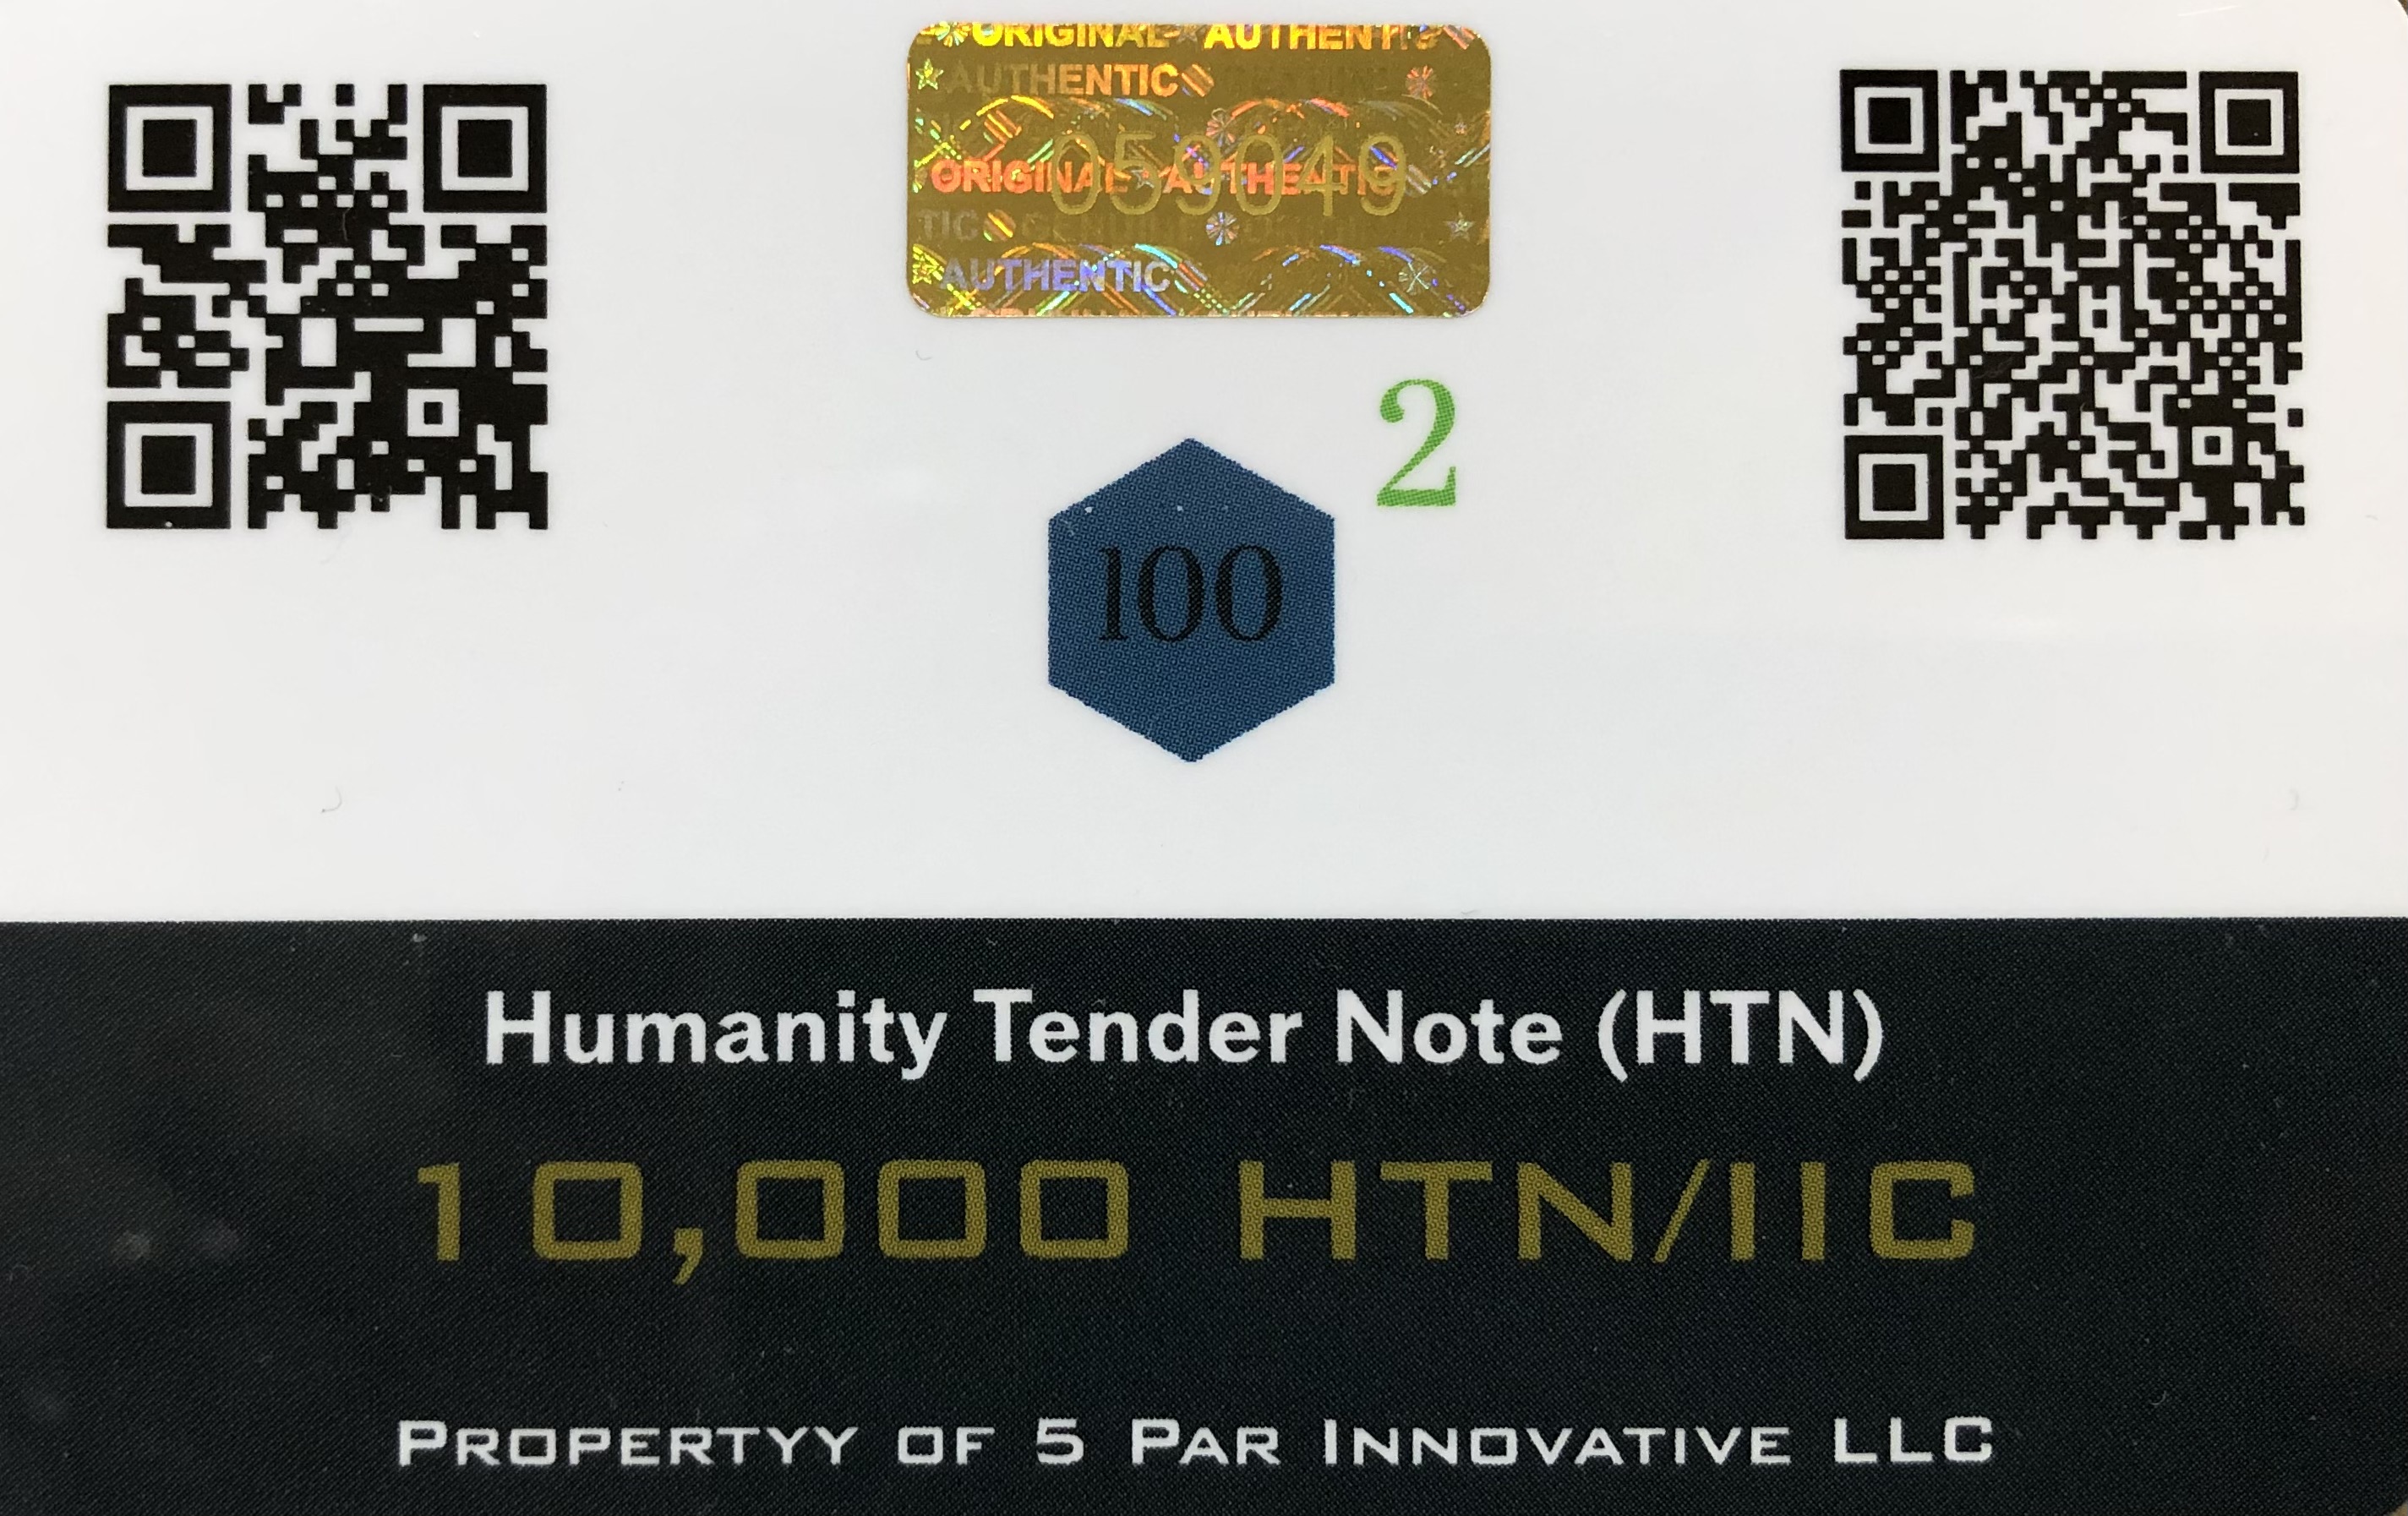 10,000 HTN/IIC